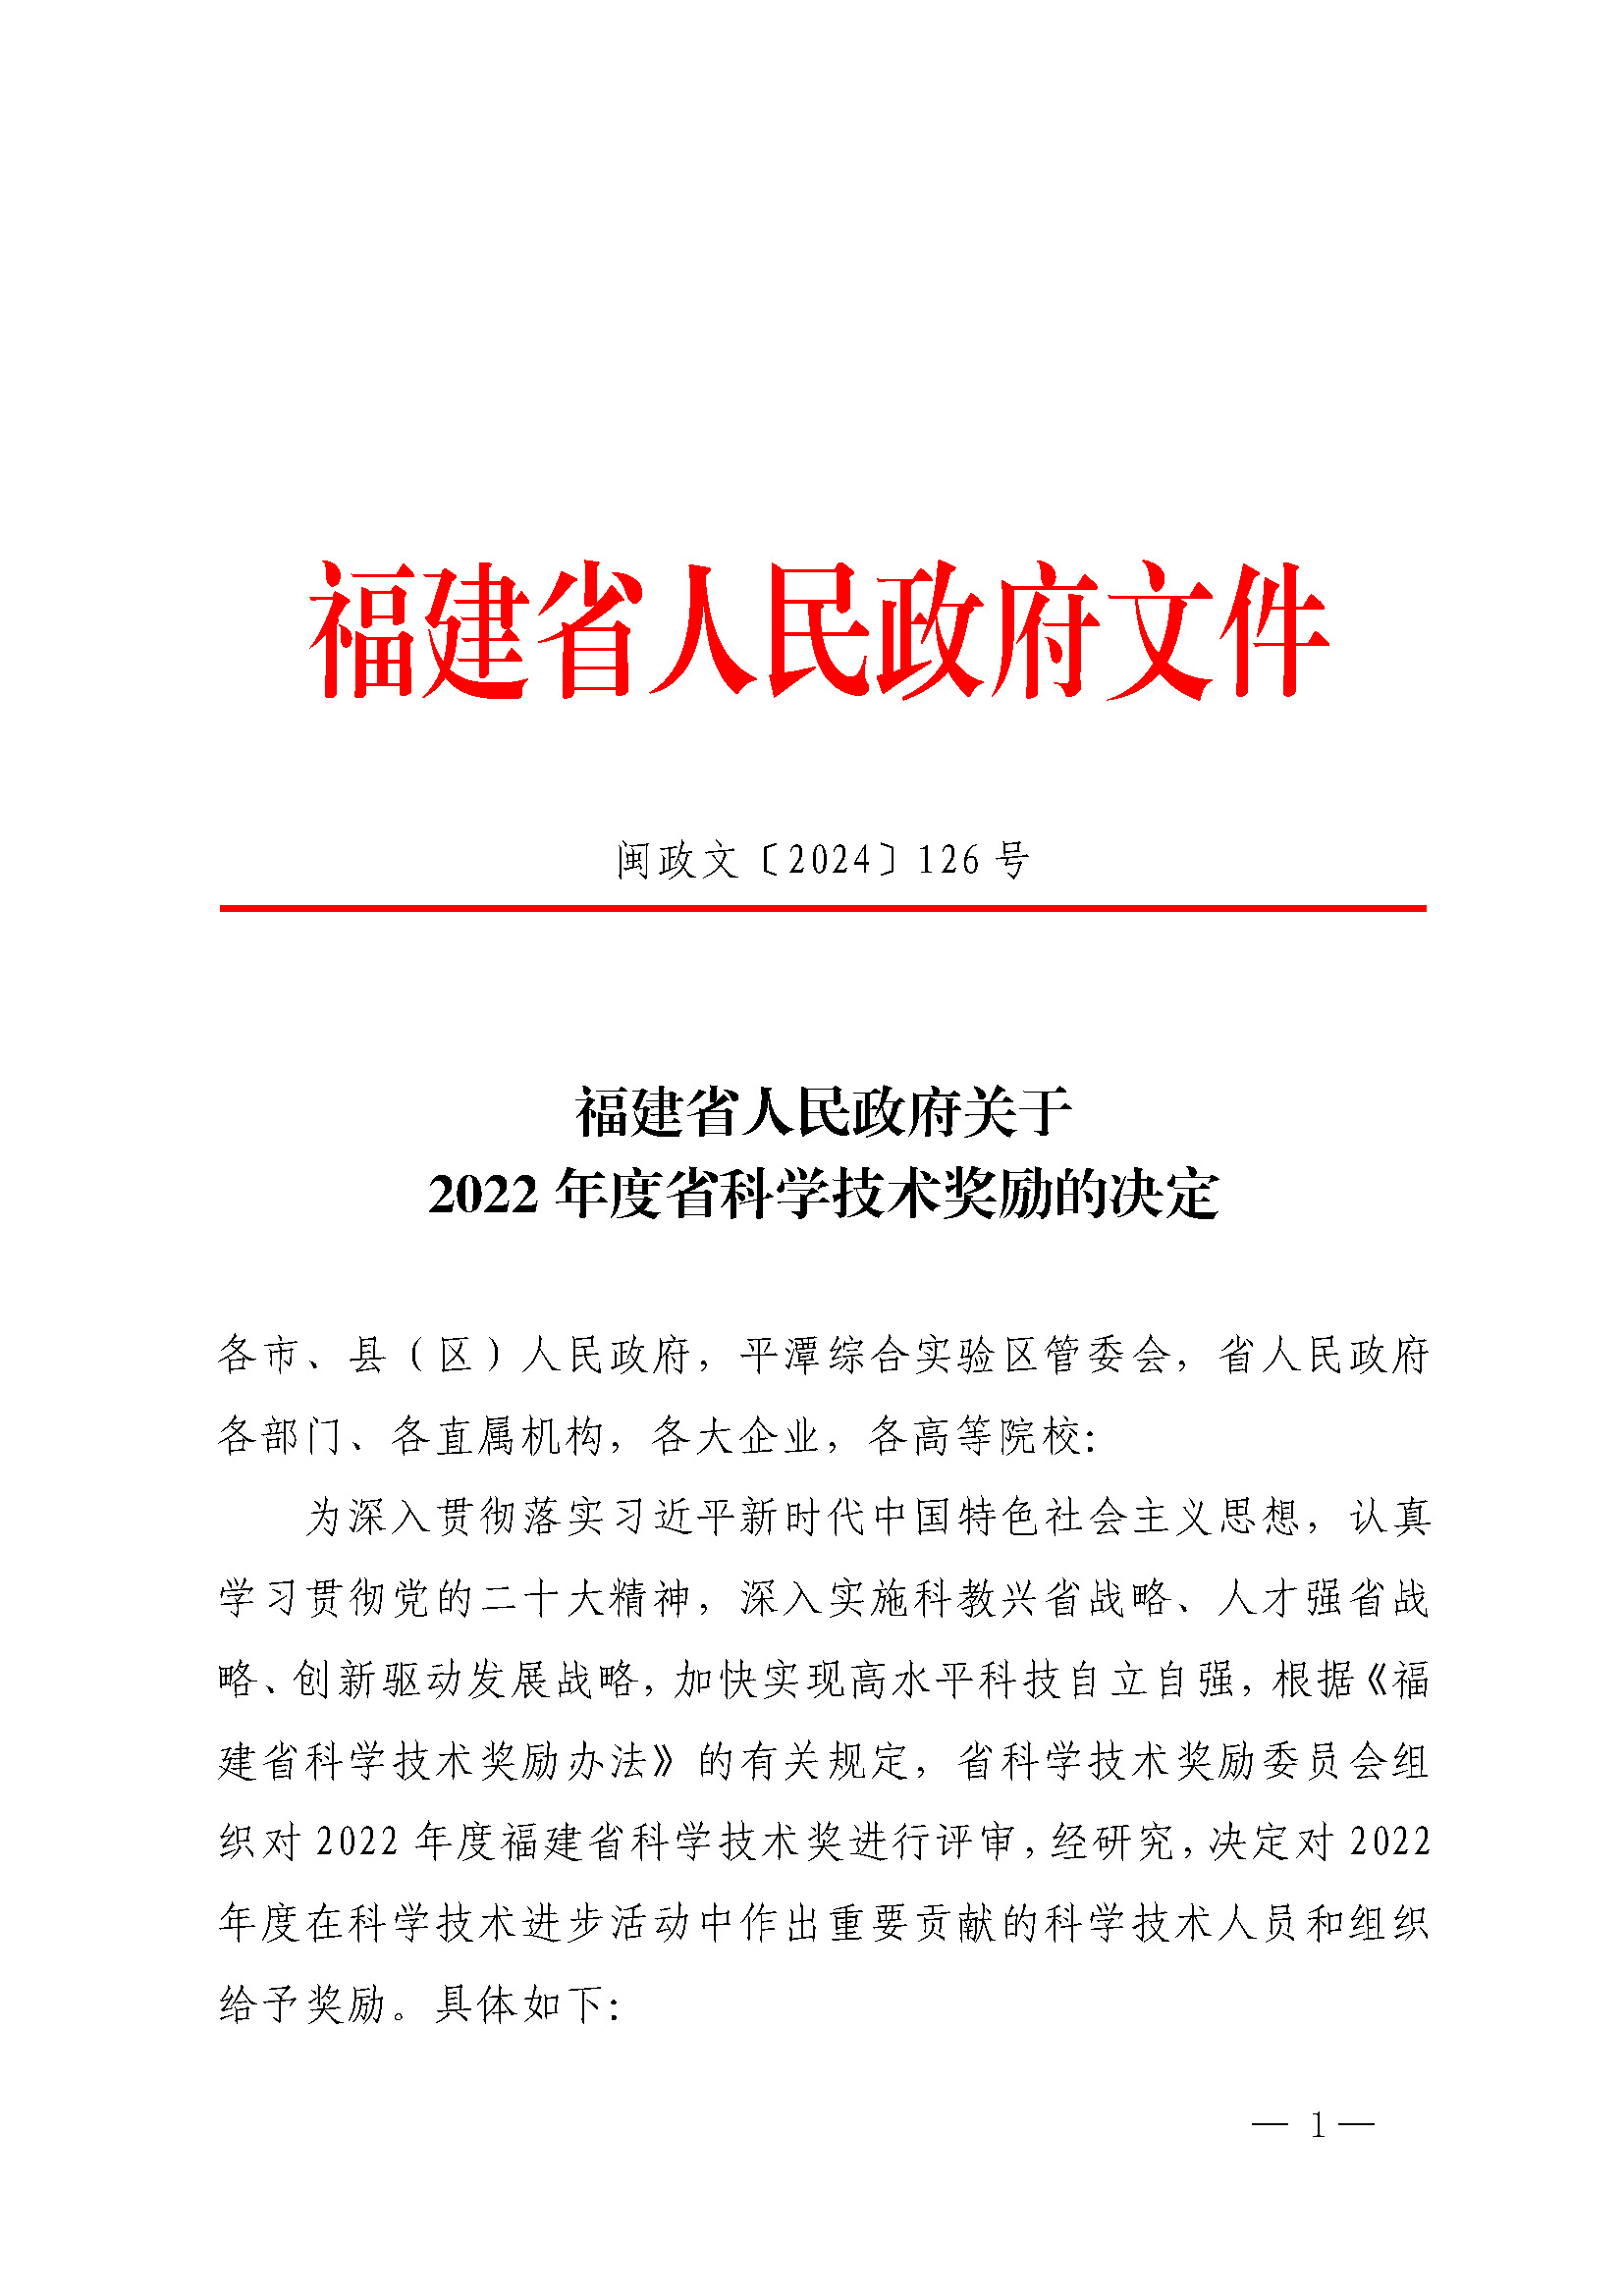 福建省人民政府关于2022年度省科学技术奖励的决定_页面_01.jpg